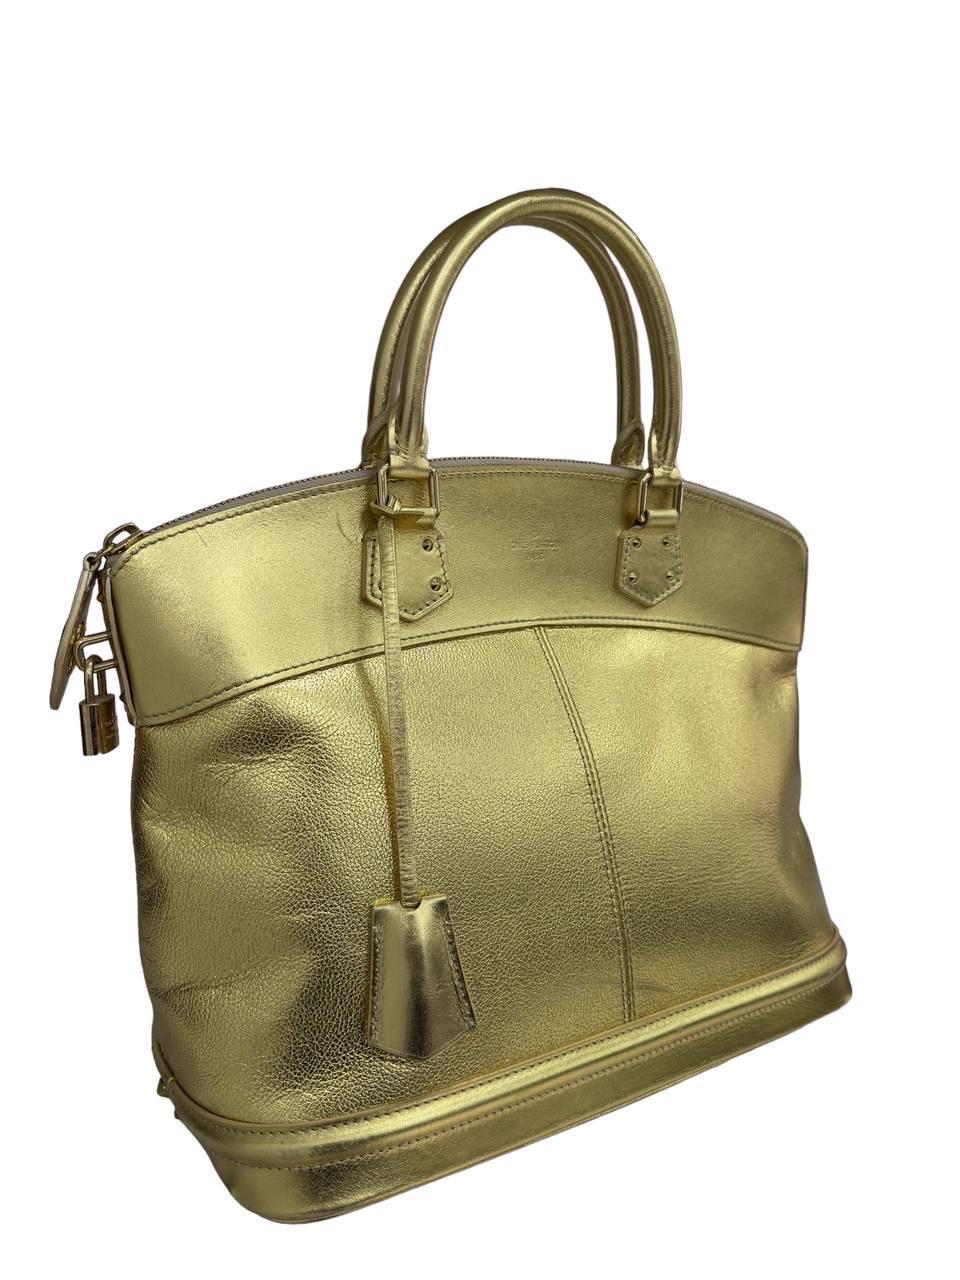 Borsa firmata Louis Vuitton, modello Lockit misura GM, realizzata in pelle oro con hardware oro. Munita di doppio manico rigido per un agevole portata a mano. Dotata di chiusura con zip, con lucchetto e chiavi. Internamente rivestita in tessuto